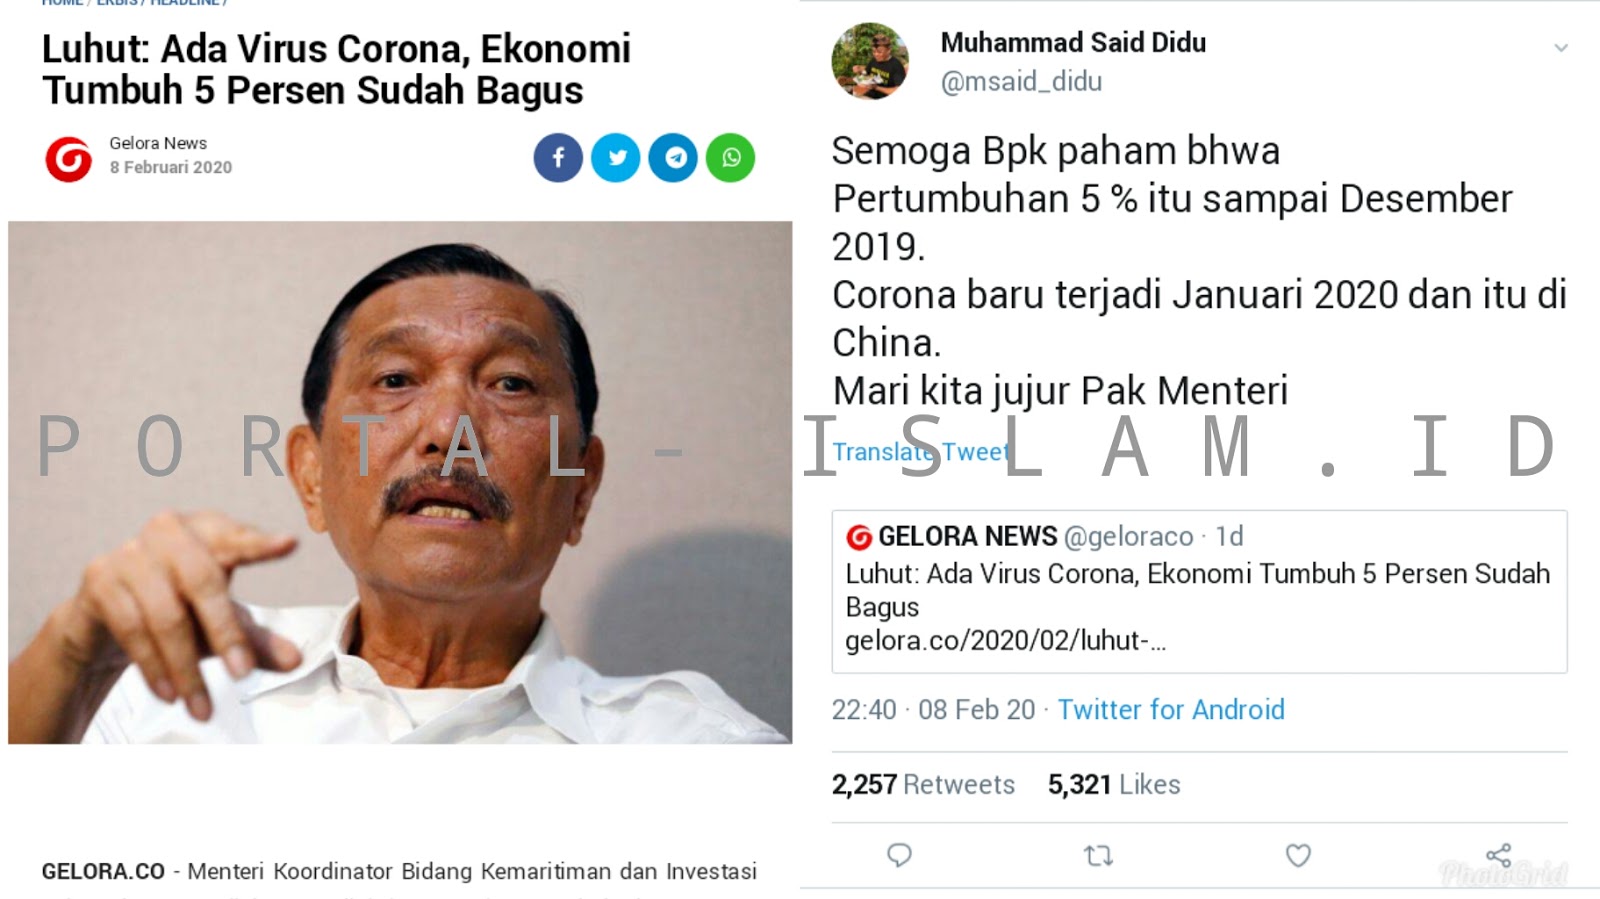 Gelora news